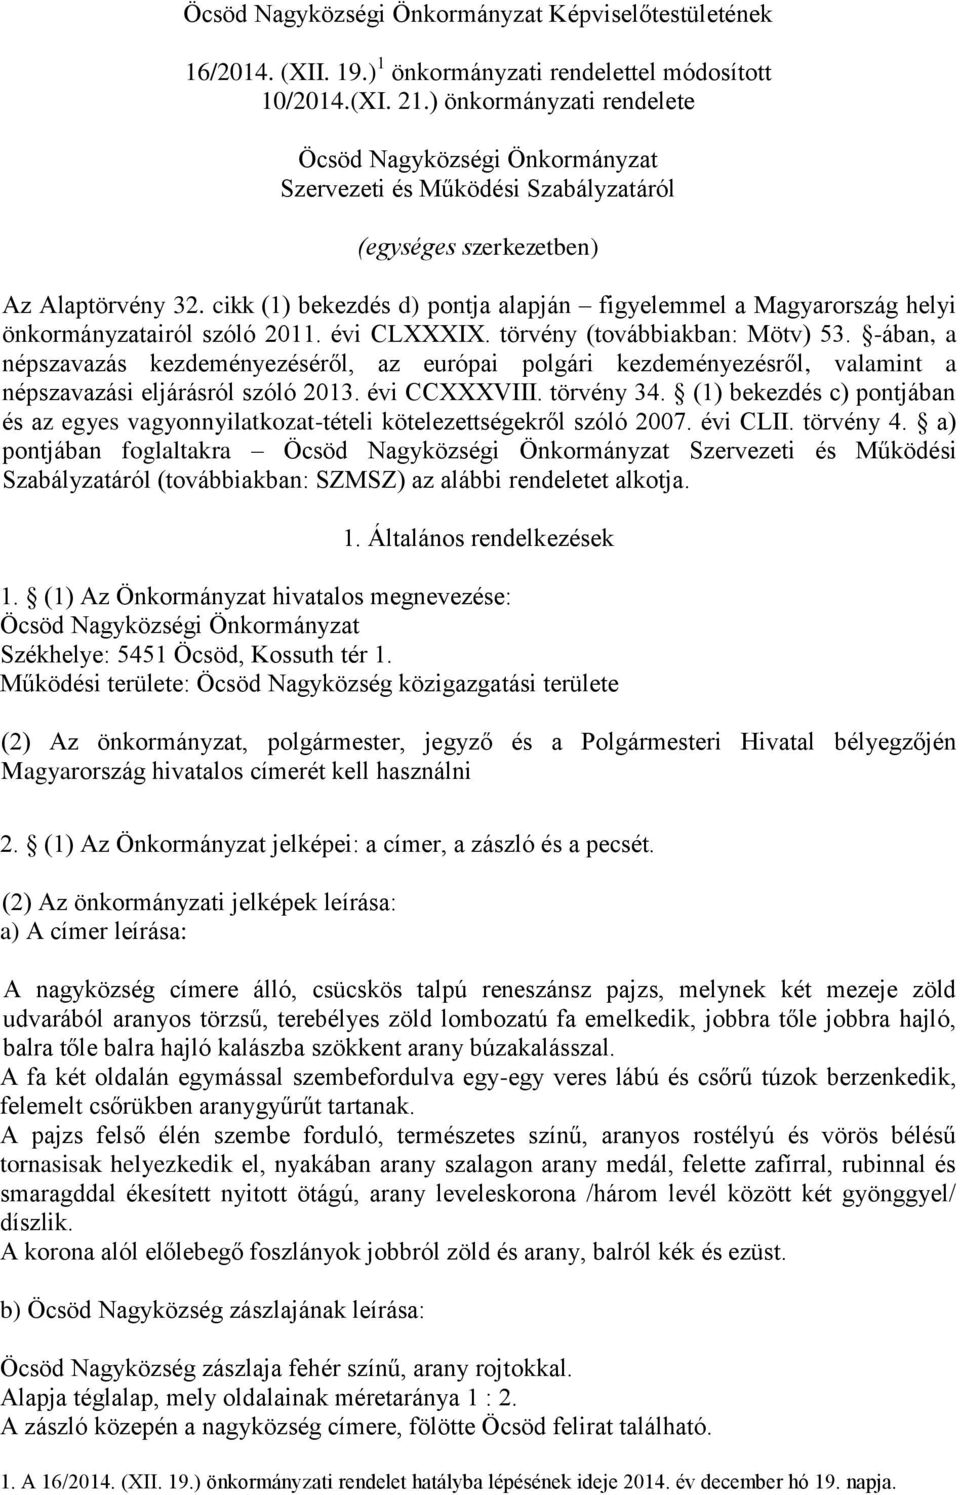 cikk (1) bekezdés d) pontja alapján figyelemmel a Magyarország helyi önkormányzatairól szóló 2011. évi CLXXXIX. törvény (továbbiakban: Mötv) 53.